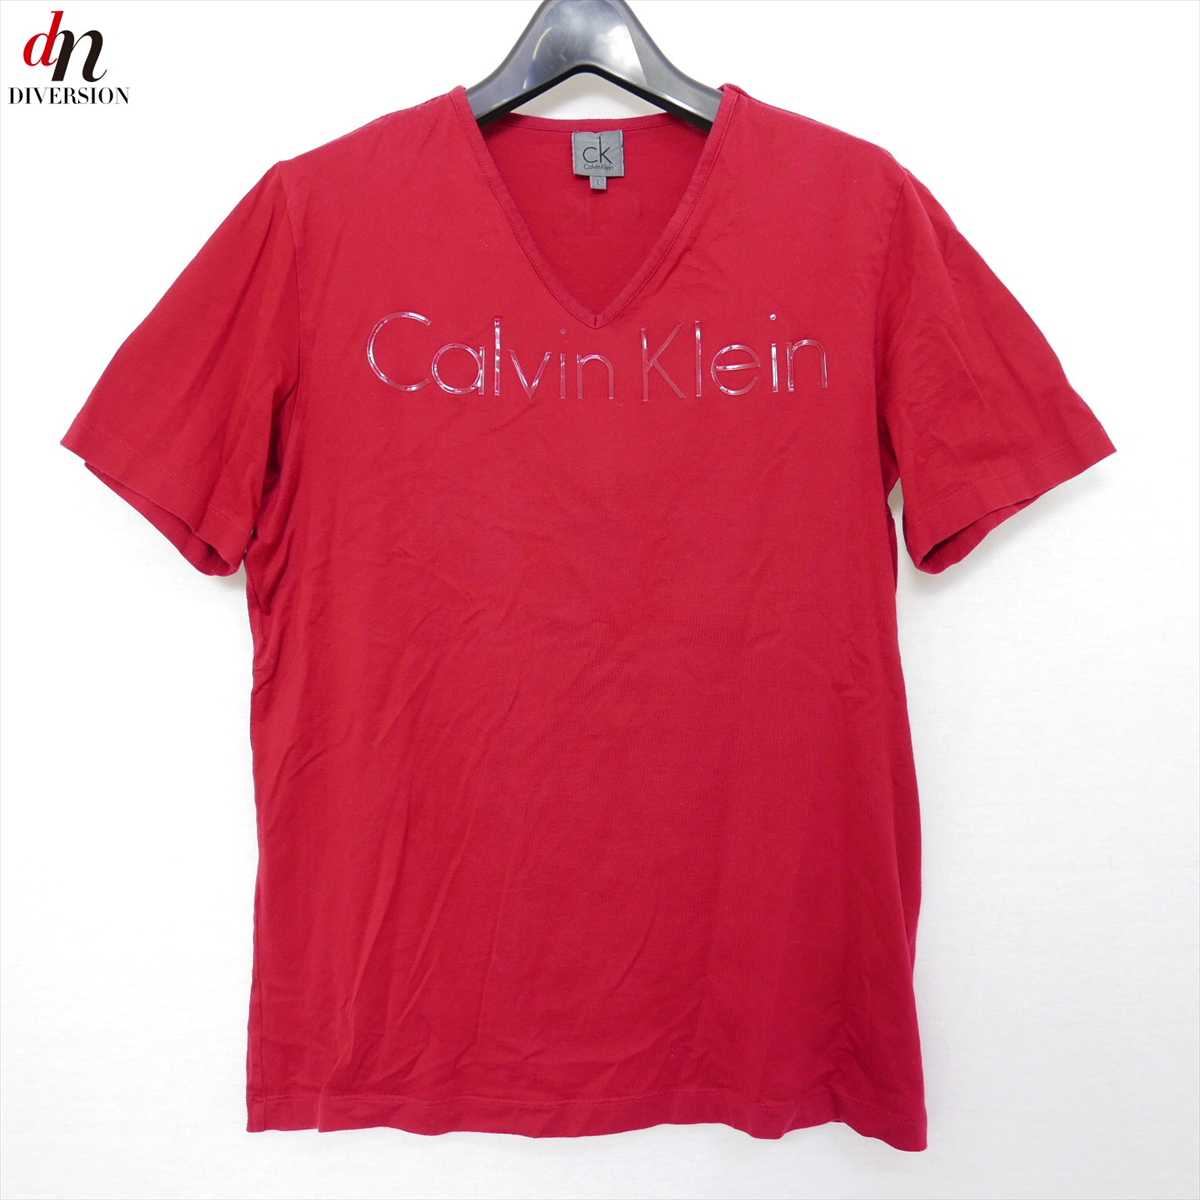 Calvin Klein カルバン クライン コットン 半袖 Vネック ロゴ TEE Tシャツ カットソー RED L 【中古】 DN-8643